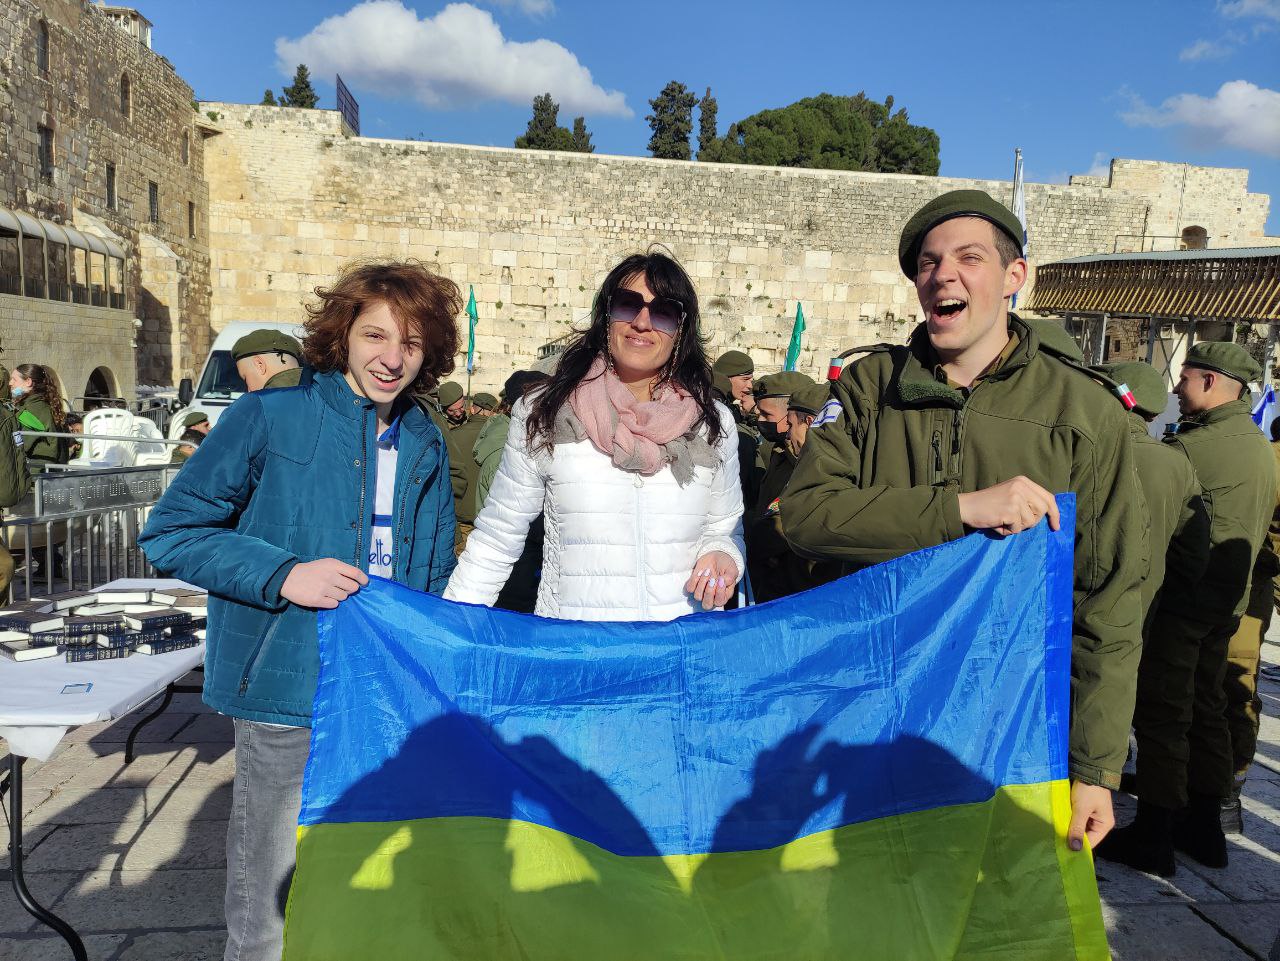 ארקדי, טטיאנה ואלברט עם דגל אוקראינה רגעים ספורים לאחר המפגש המרגש בכותל